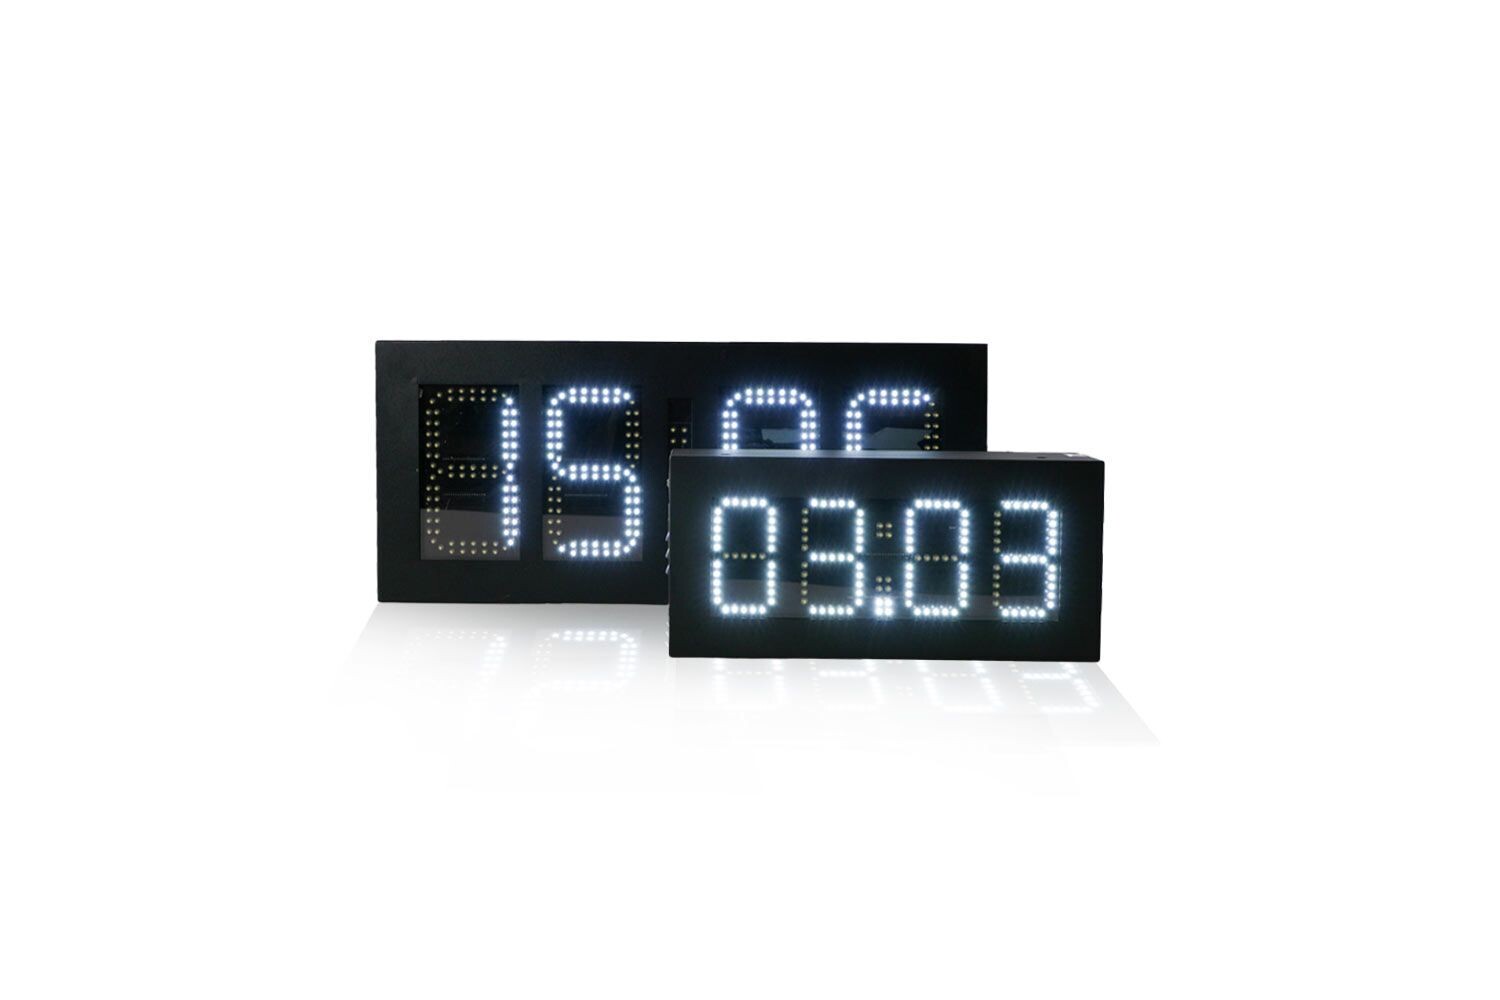 6 LED-Digital-Uhr mit Datum- u. Temperaturanzeige, doppelseitig